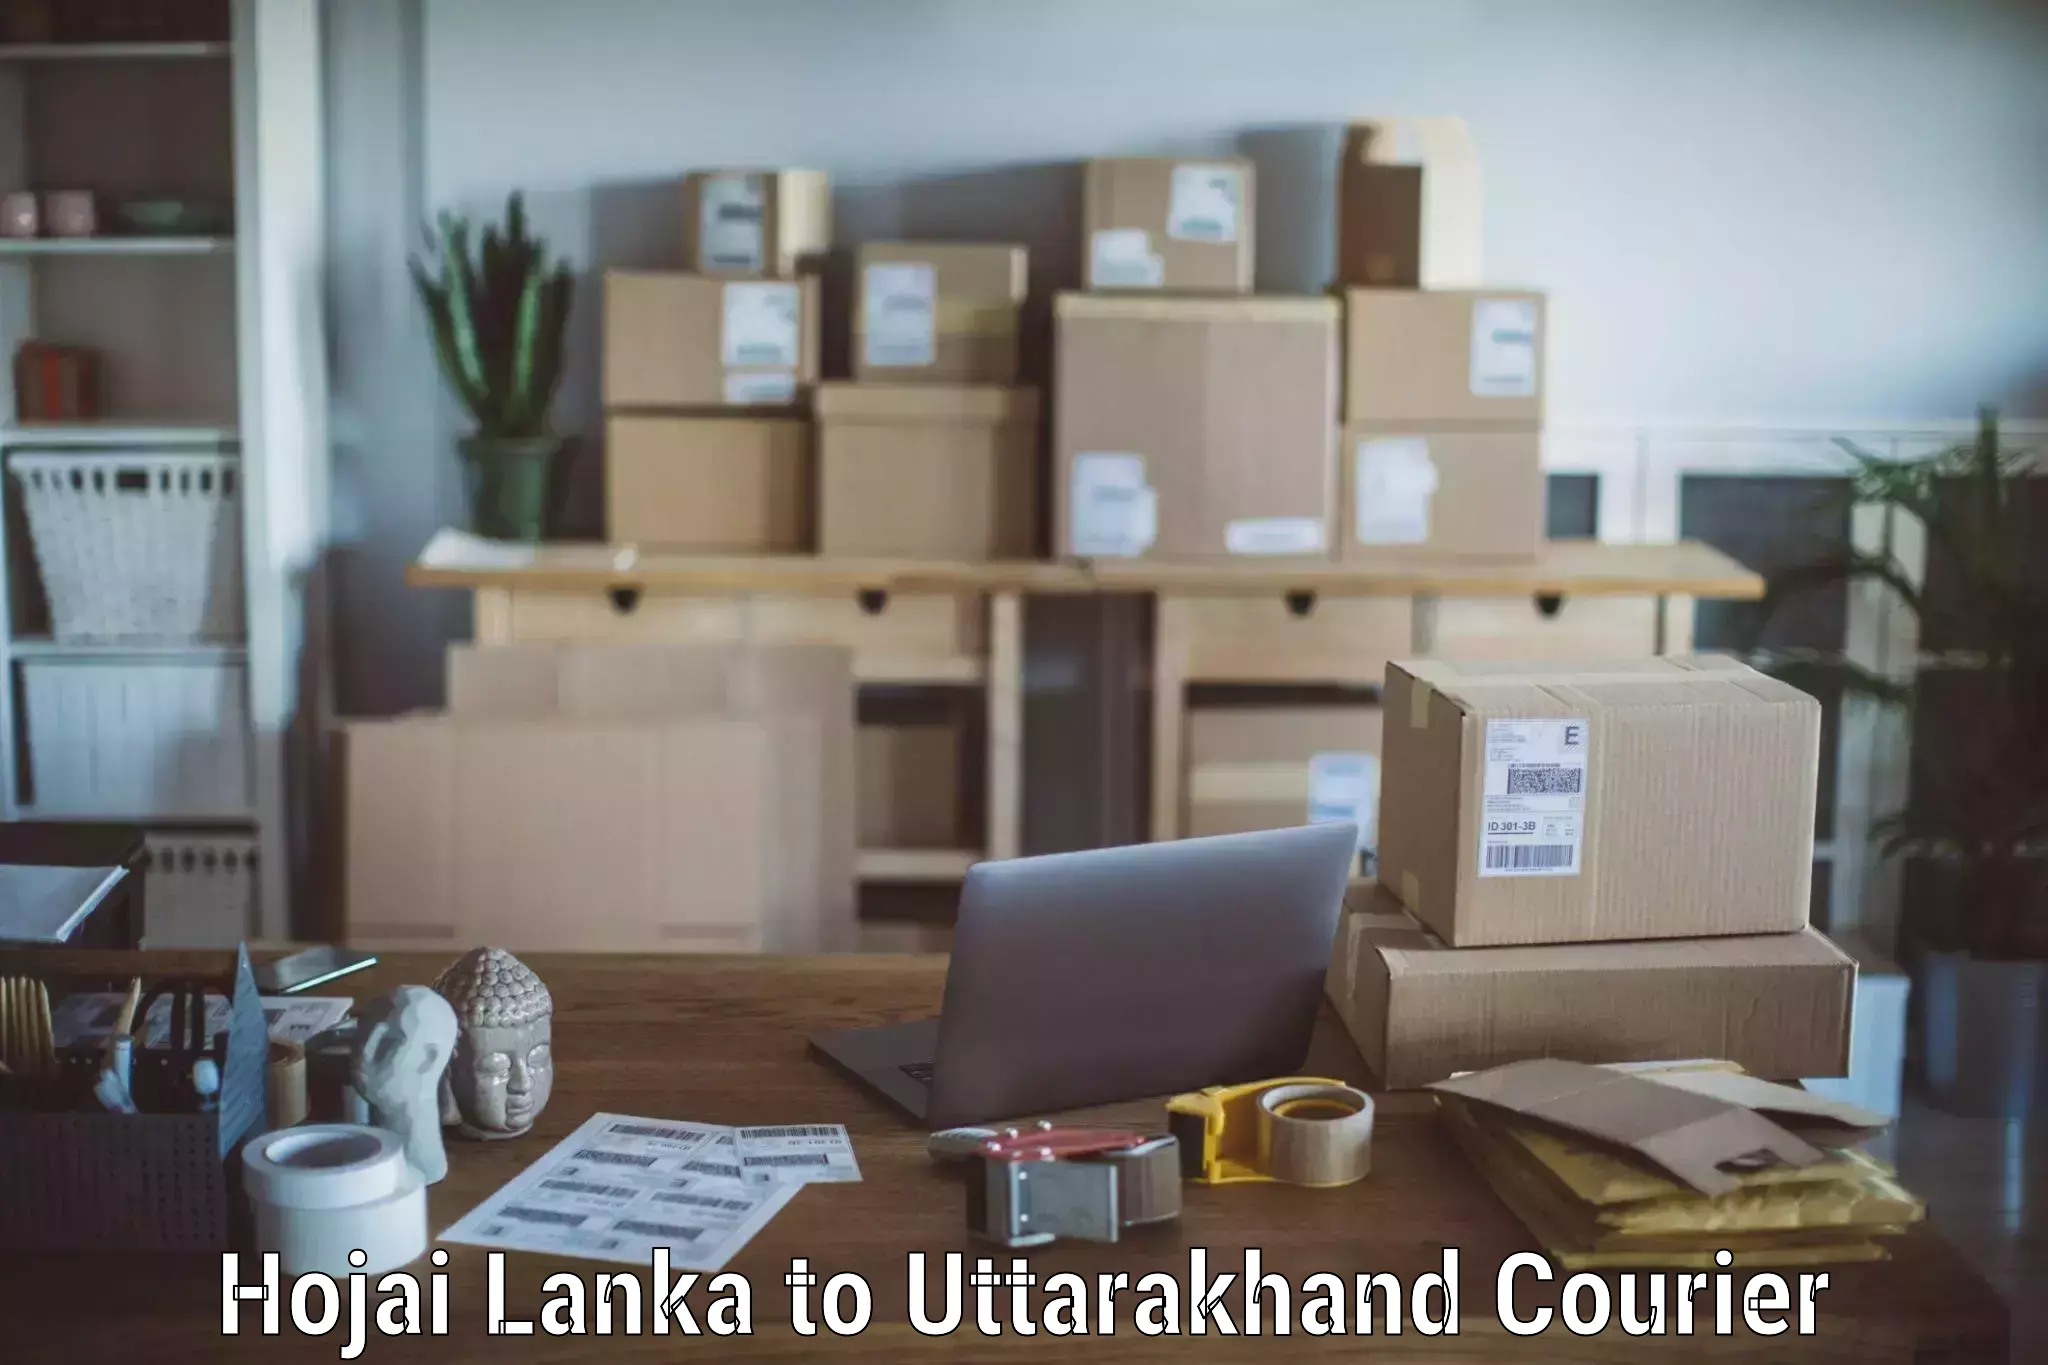 Skilled furniture transporters Hojai Lanka to Dwarahat